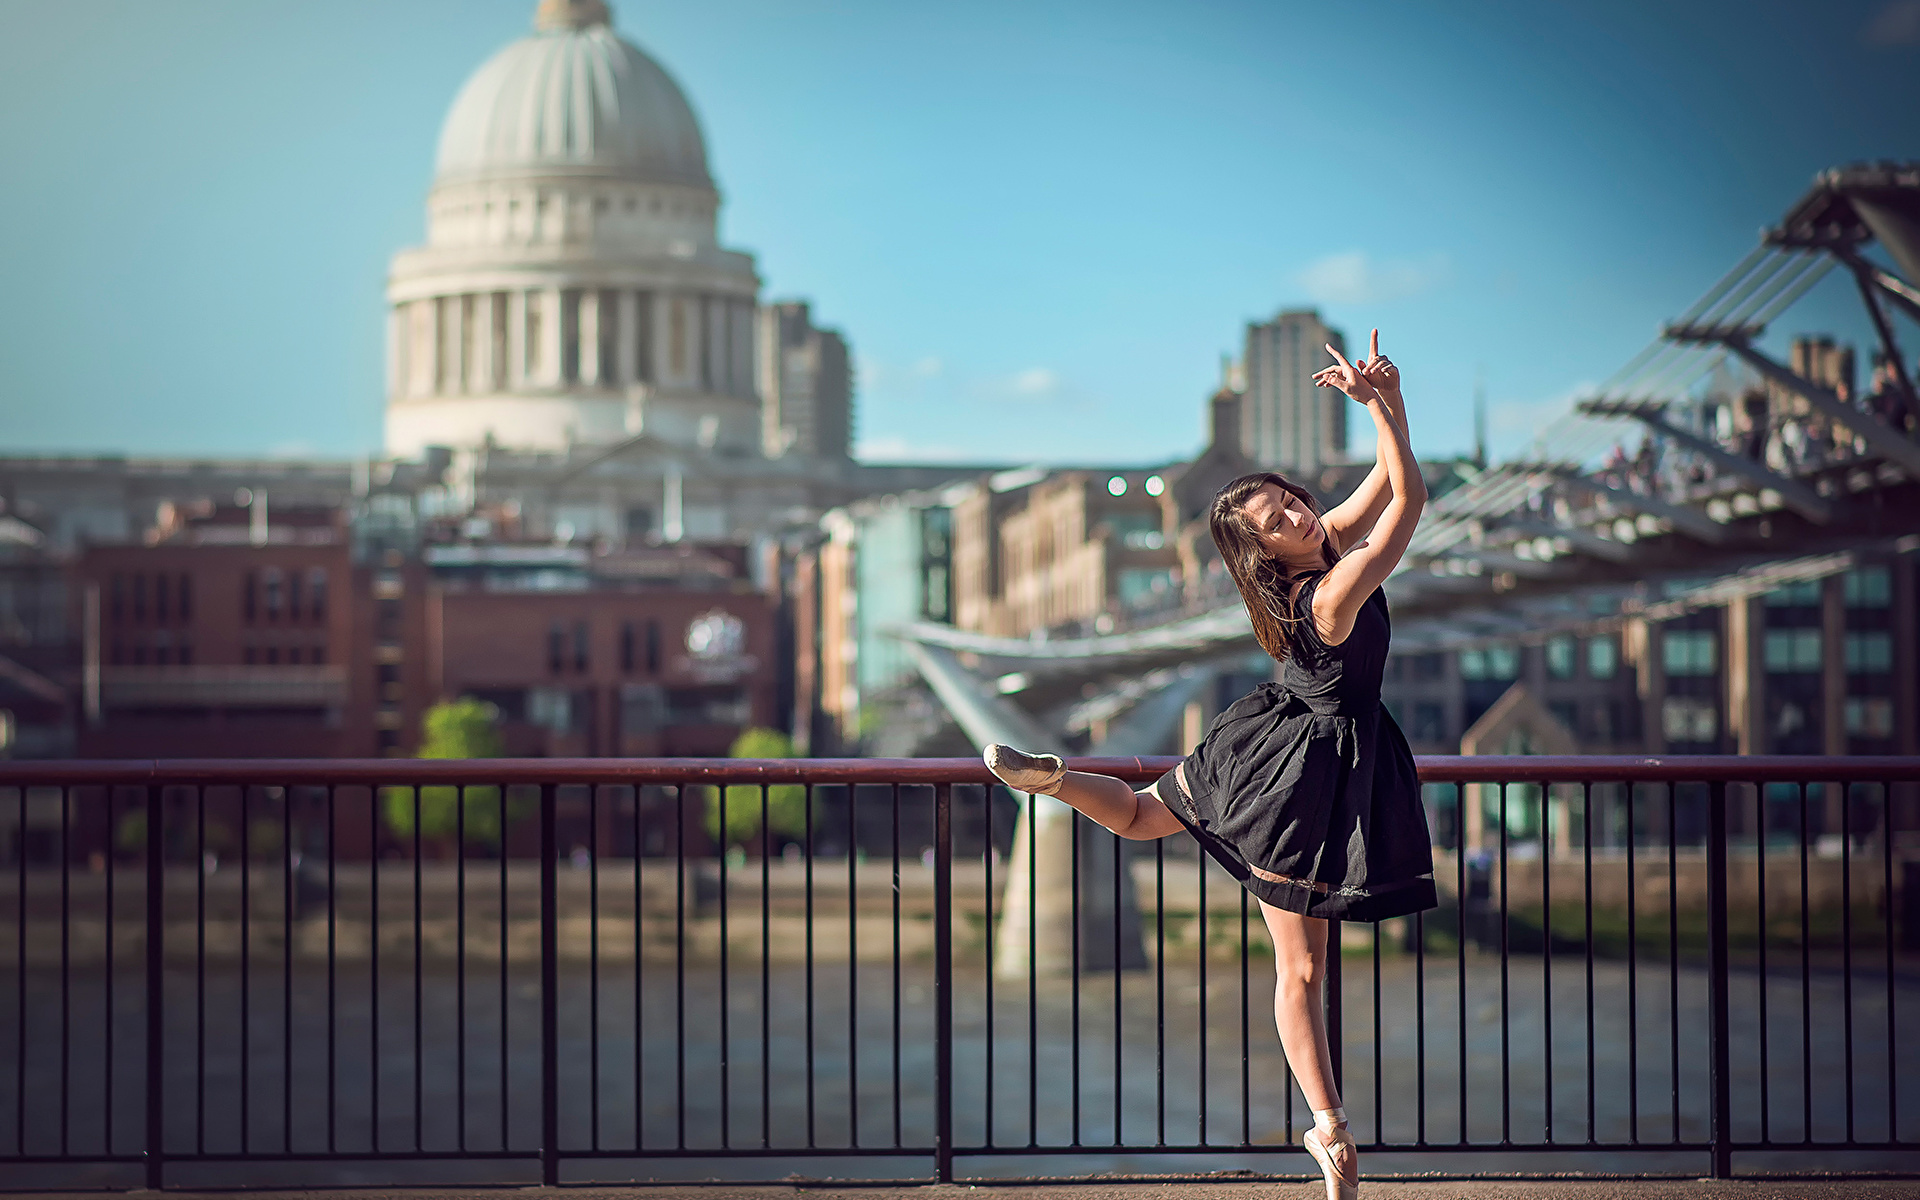 Фото Лондон балета Eponine Bougot молодая женщина Забор платья 1920x1200 лондоне Балет балете девушка Девушки молодые женщины ограда забора забором Платье